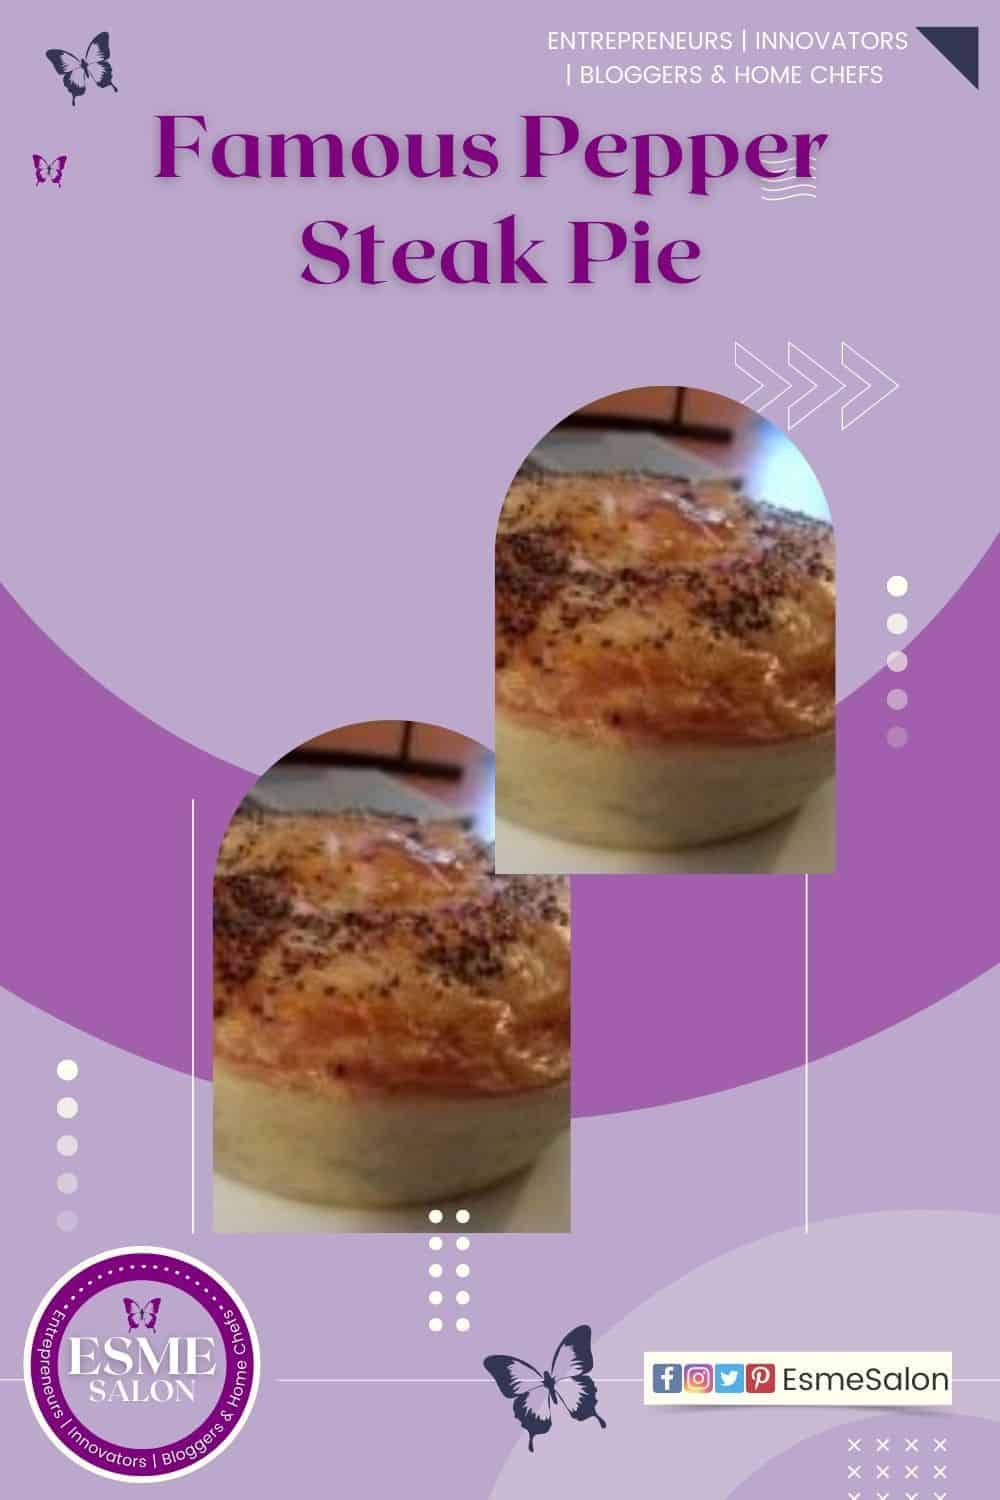 Famous Pepper Steak Pie, a single pie in lovely baked crust